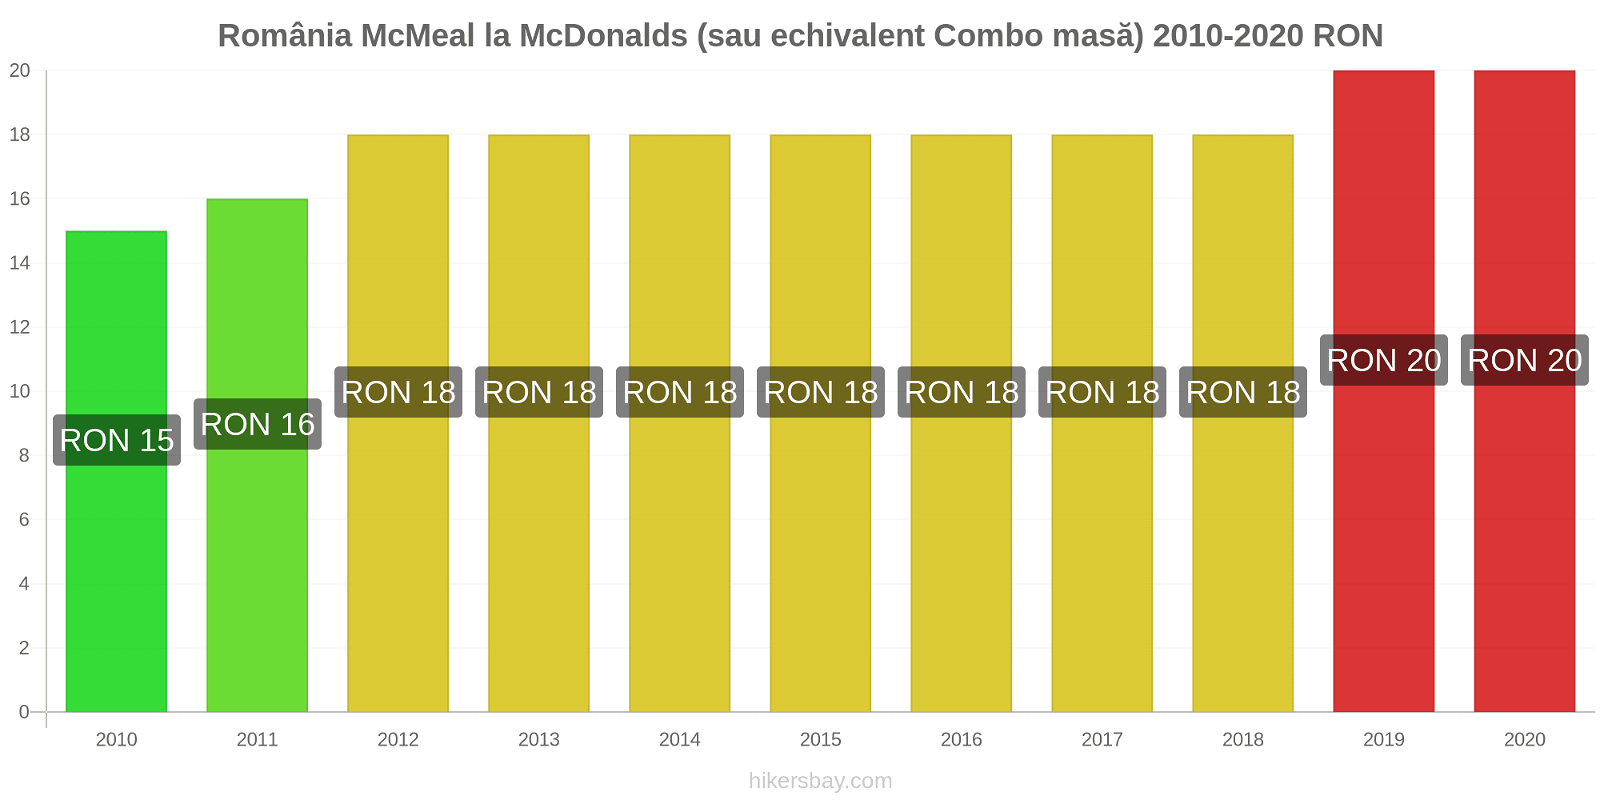 România modificări de preț McMeal la McDonalds (sau echivalent Combo masă) hikersbay.com